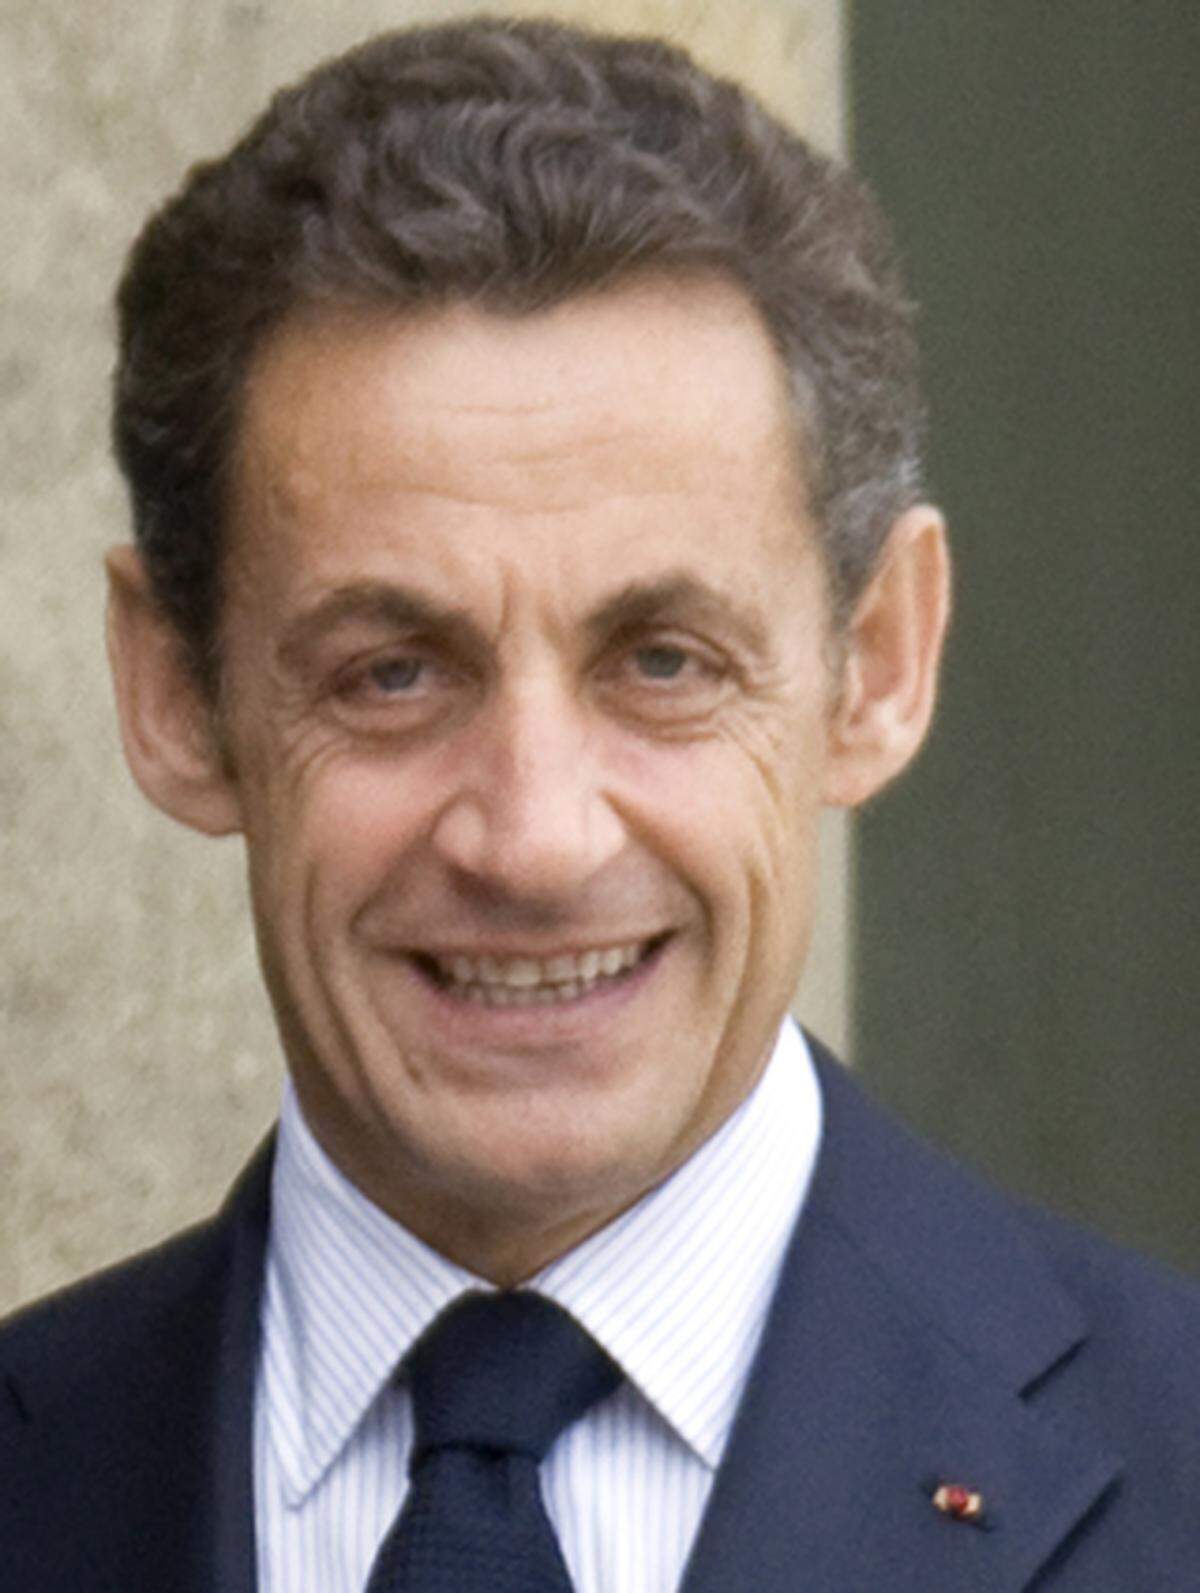 Nicolas Sarkozy hat den Iren zu ihrer "Wahl Europas" gratuliert. Das irische Ja zum EU-Reformvertrag kröne die unter der französischen EU-Ratspräsidentschaft begonnenen Bemühungen, auf die irischen Sorgen eine Antwort zu finden, heißt es in einer am Samstag in Paris veröffentlichten Mitteilung des Elysee-Palastes. "Dies bedeutet einen großen Schritt voran zum Inkrafttreten des Lissabon-Vertrags", heißt es weiter.